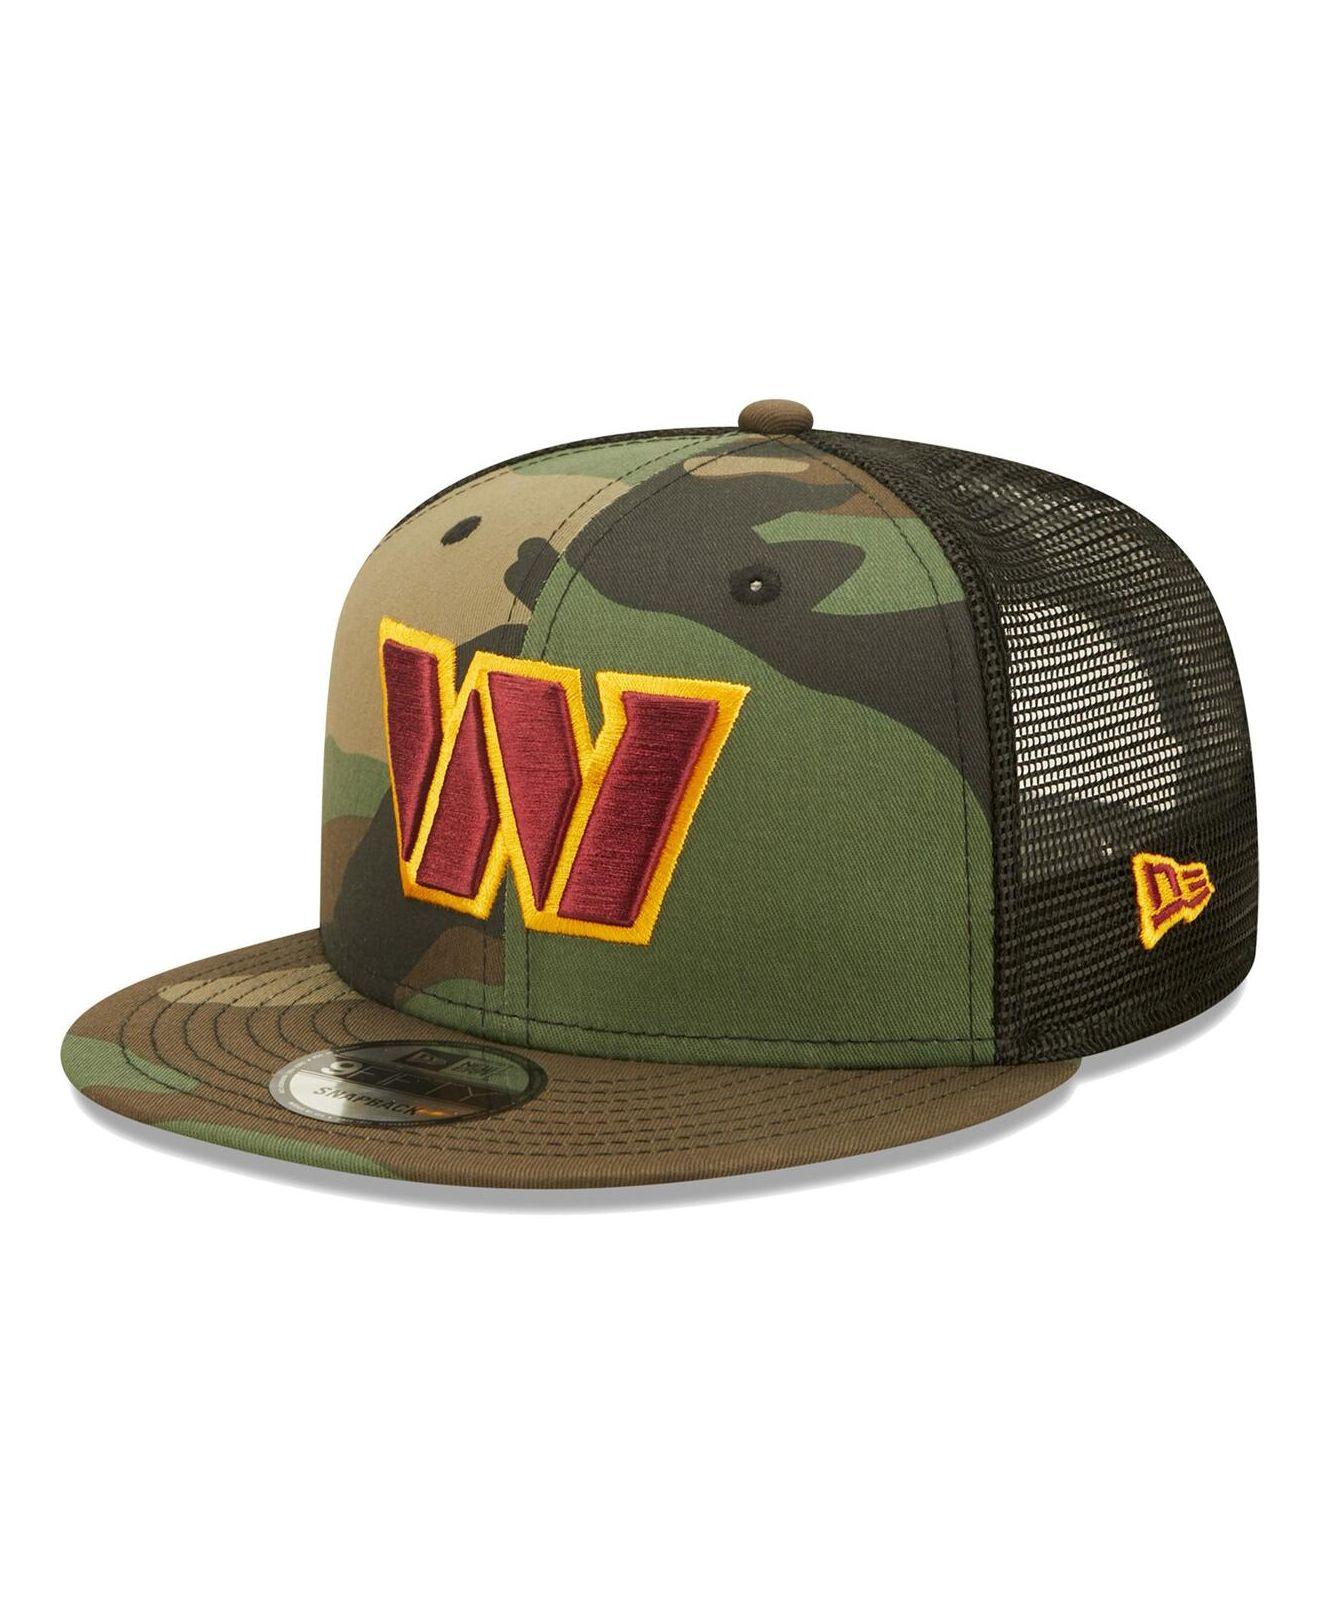 Washington Nationals New Era Vacay Trucker 9FIFTY Snapback Hat